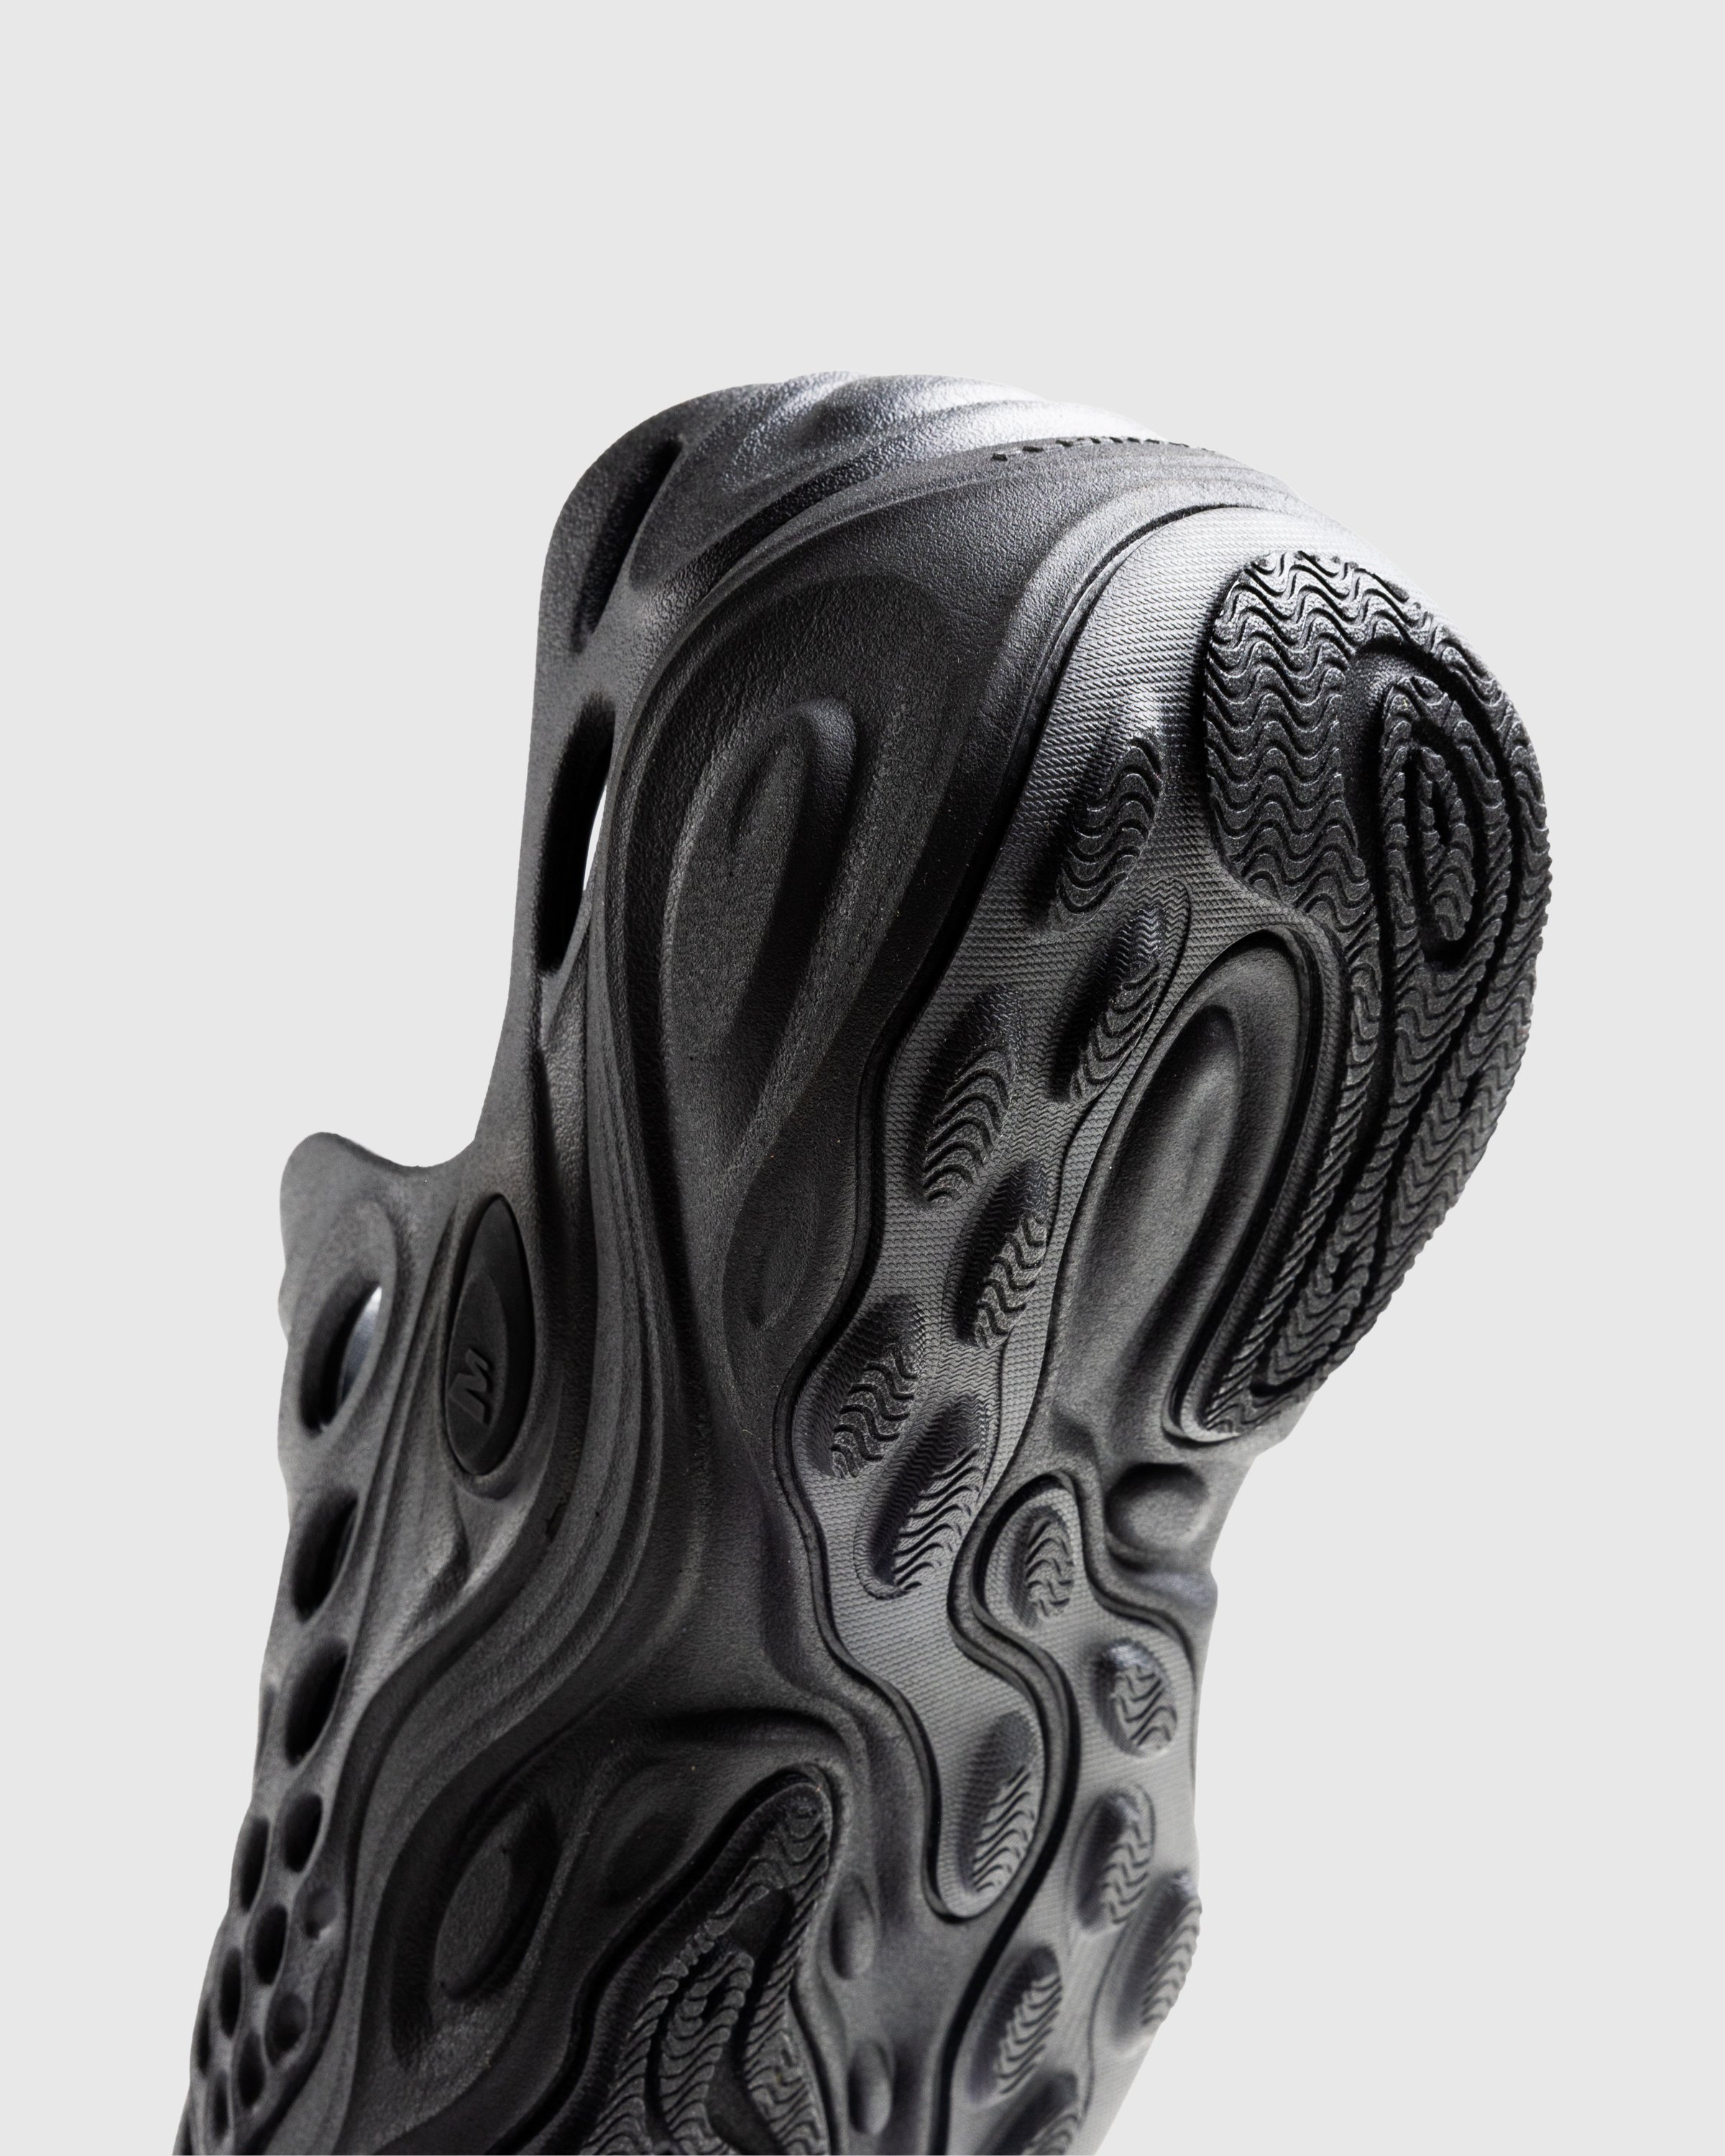 Merrell - HYDRO NEXT GEN MOC SE/TRIPLE BLACK - Footwear - Black - Image 6